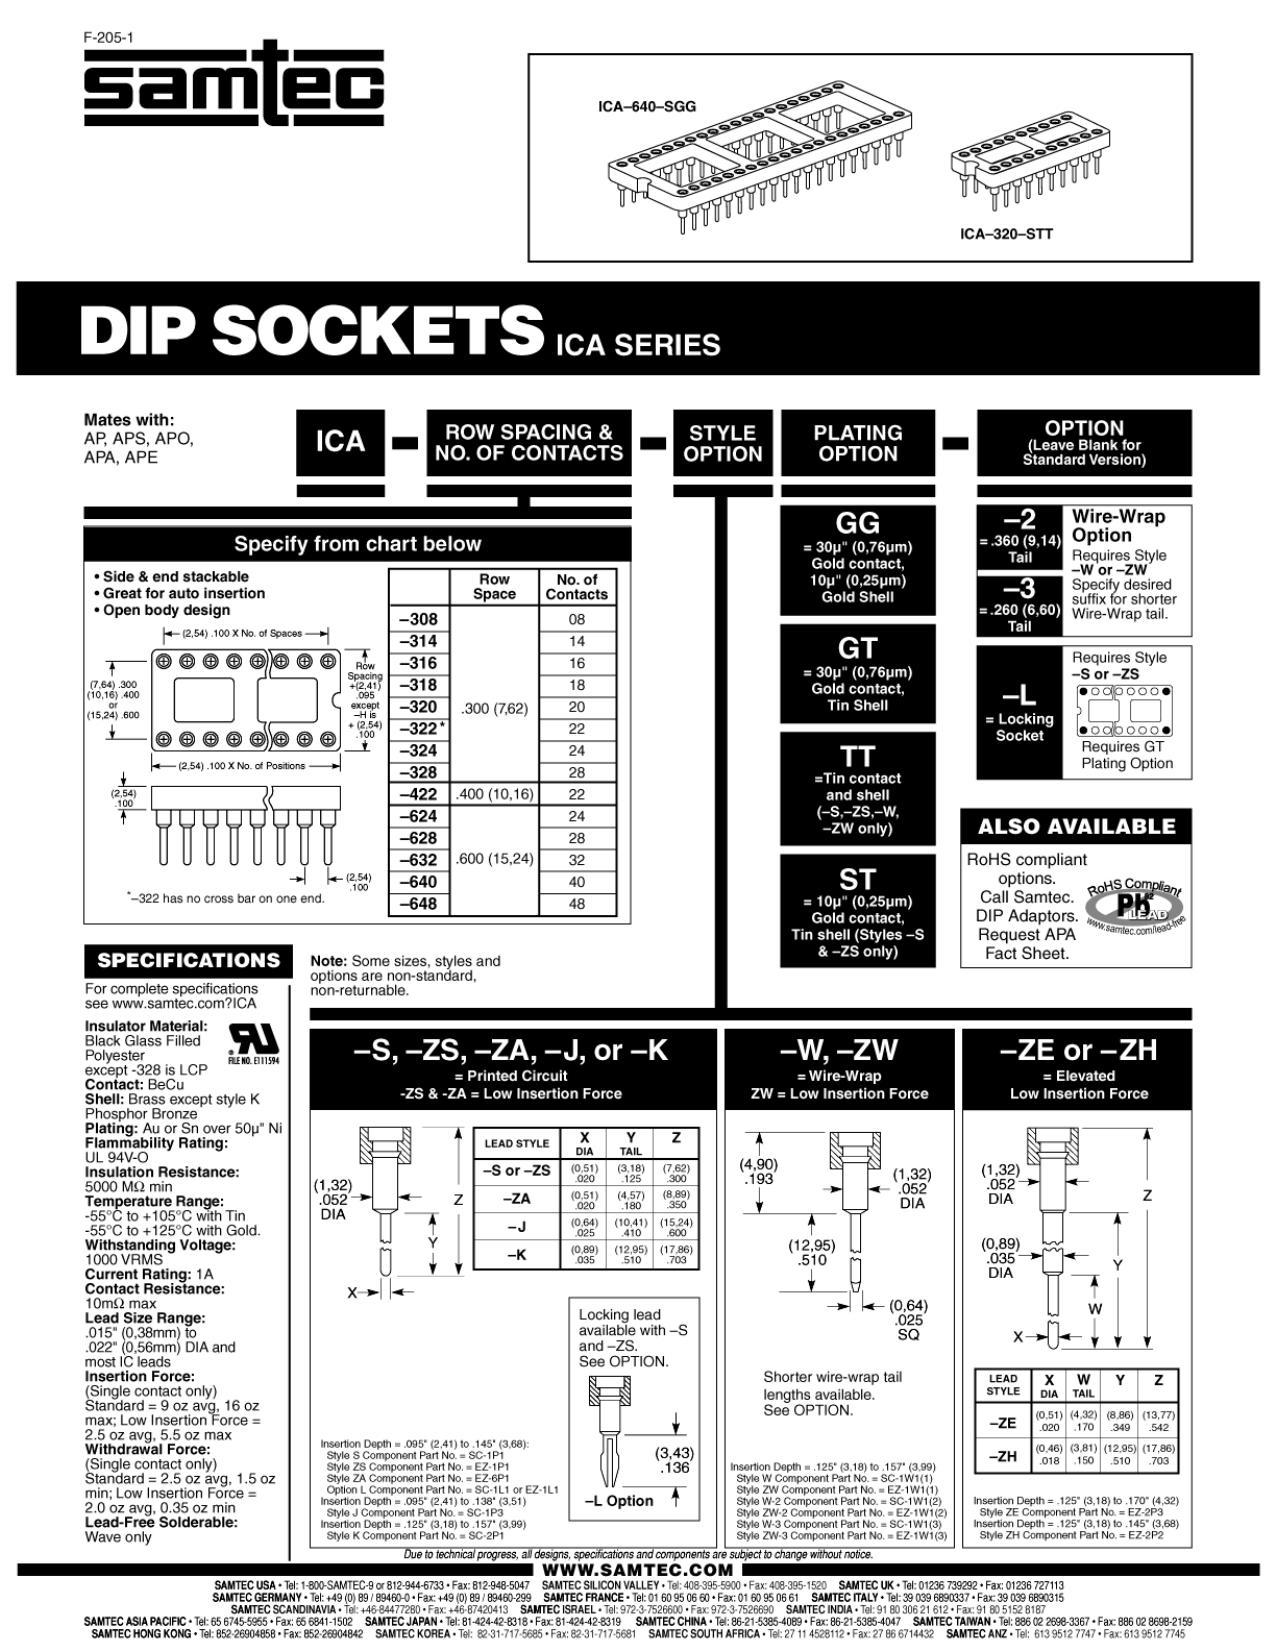 dip-sockets-ica-series.pdf